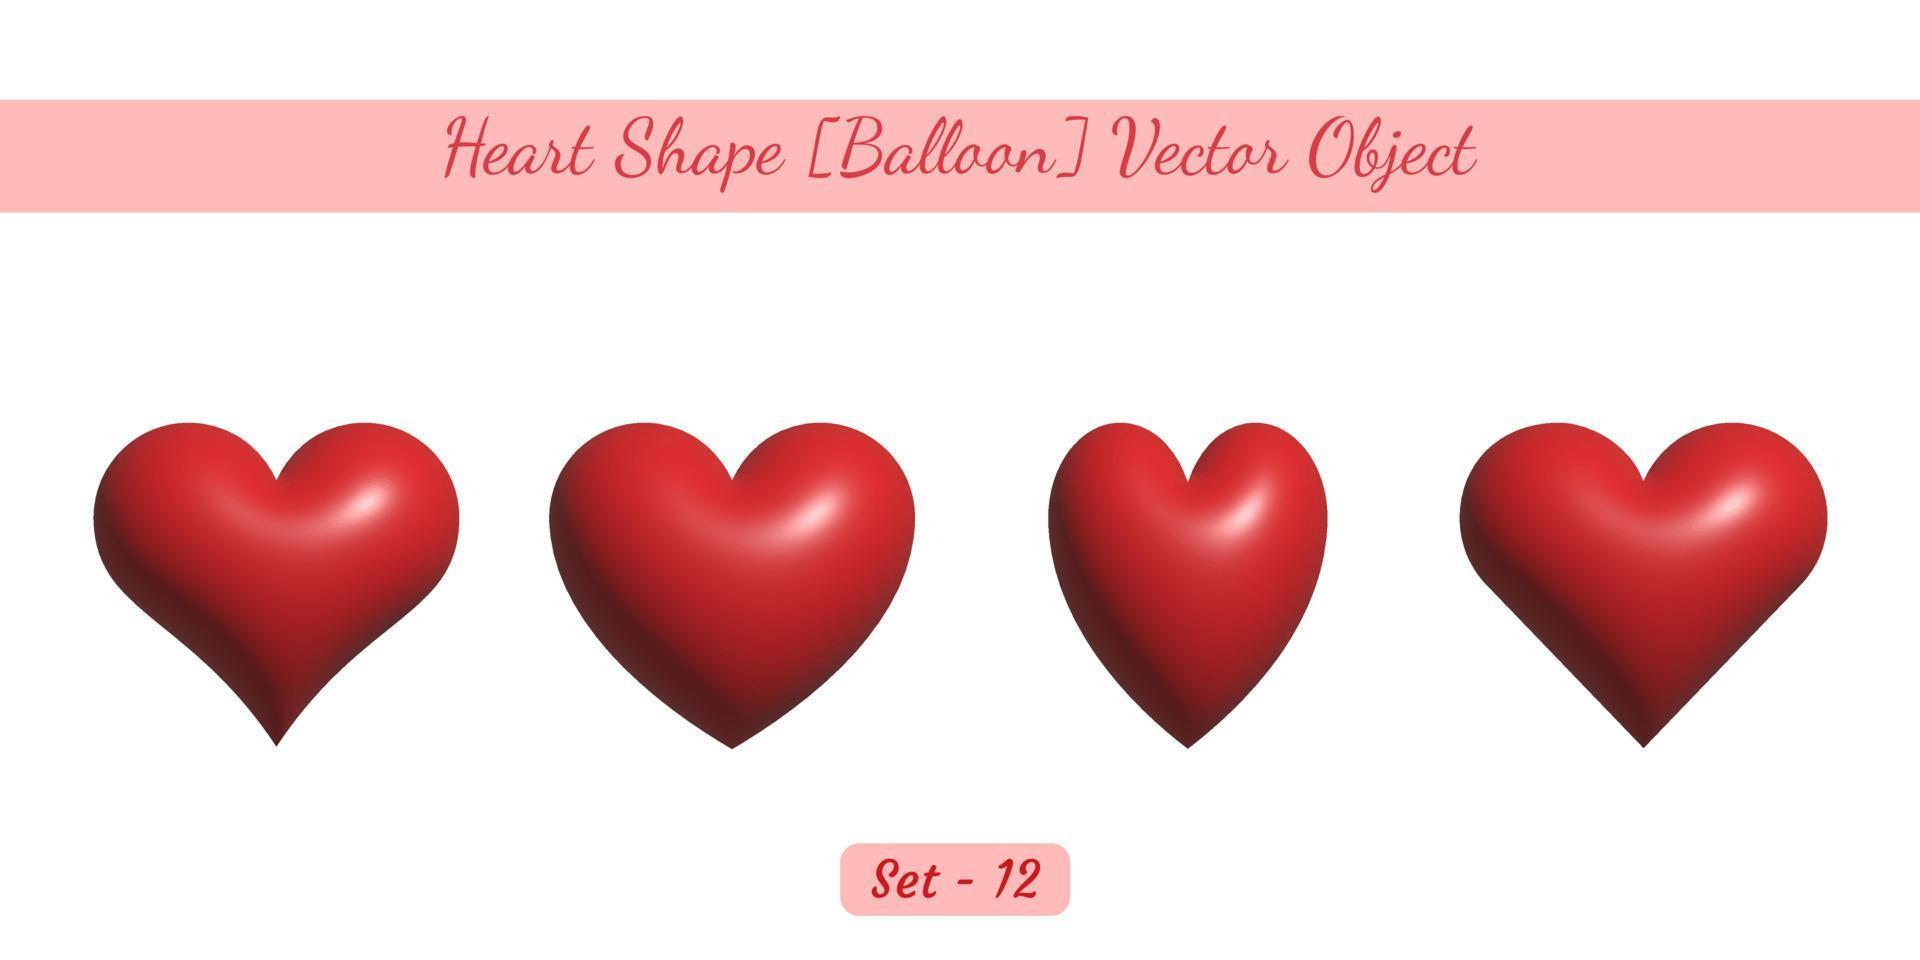 Palloncino a forma di cuore 3d lucido come set di oggetti, set di oggetti vettoriali a forma di cuore creato su sfondo bianco.